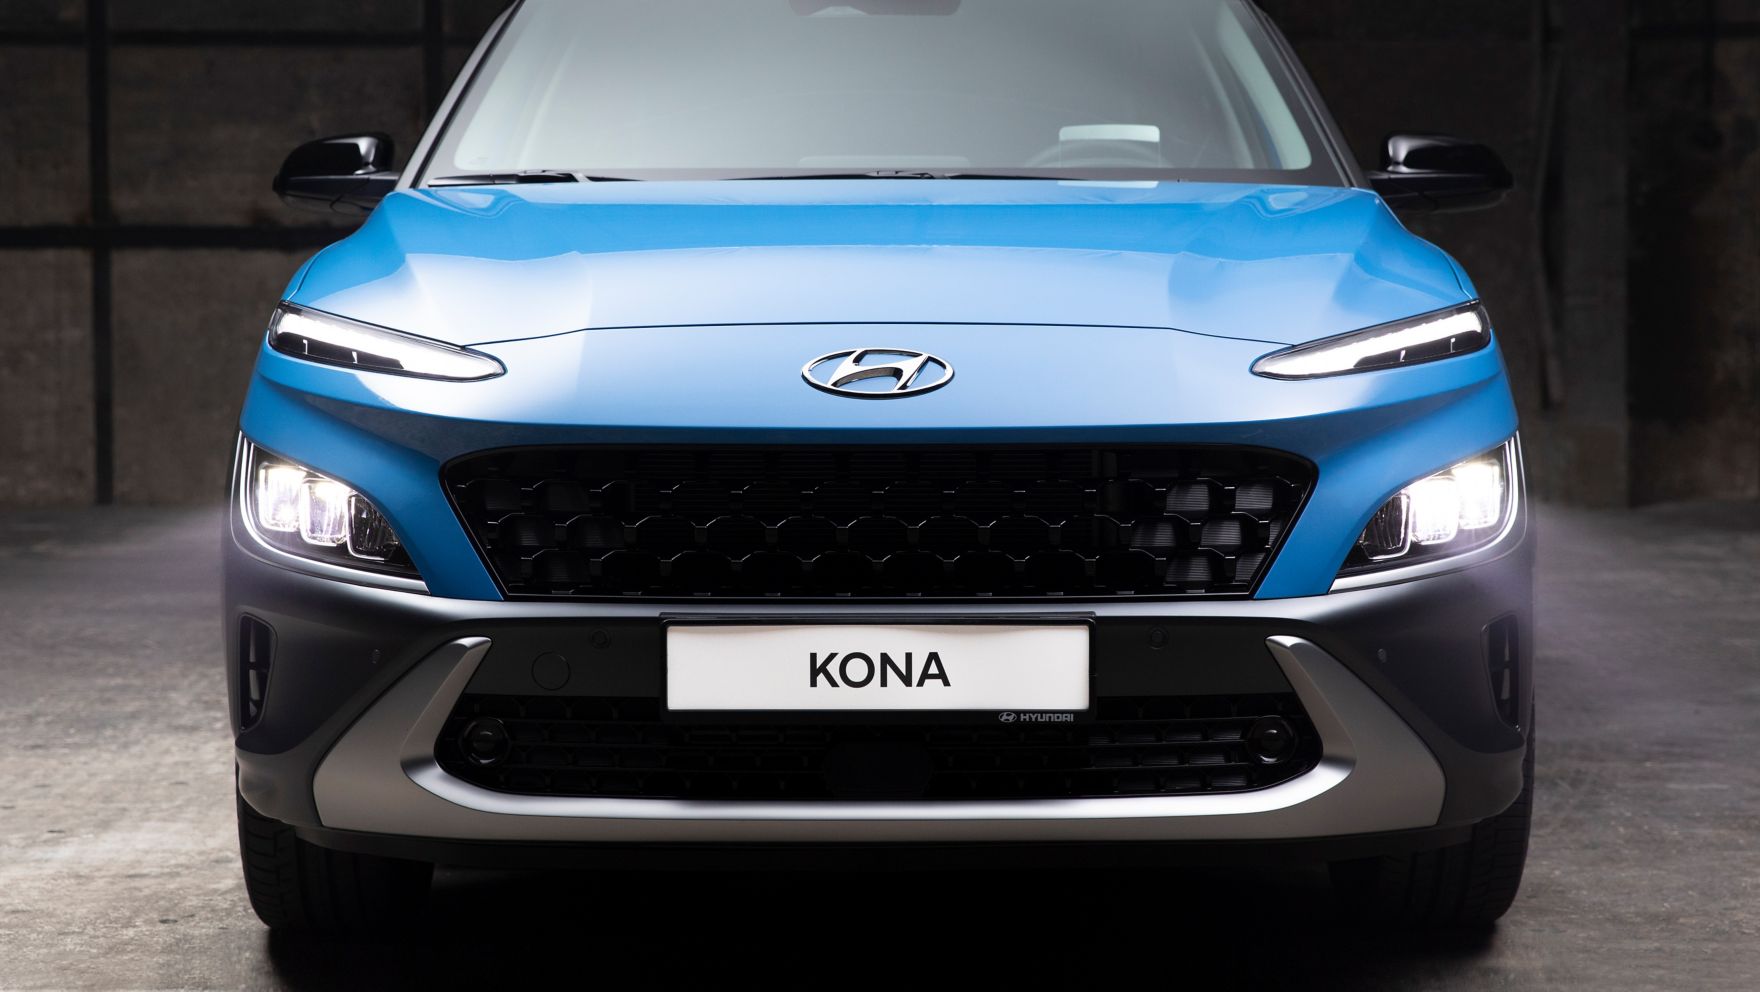 Čelní pohled na nový Hyundai Kona v barvě Surfy Blue.